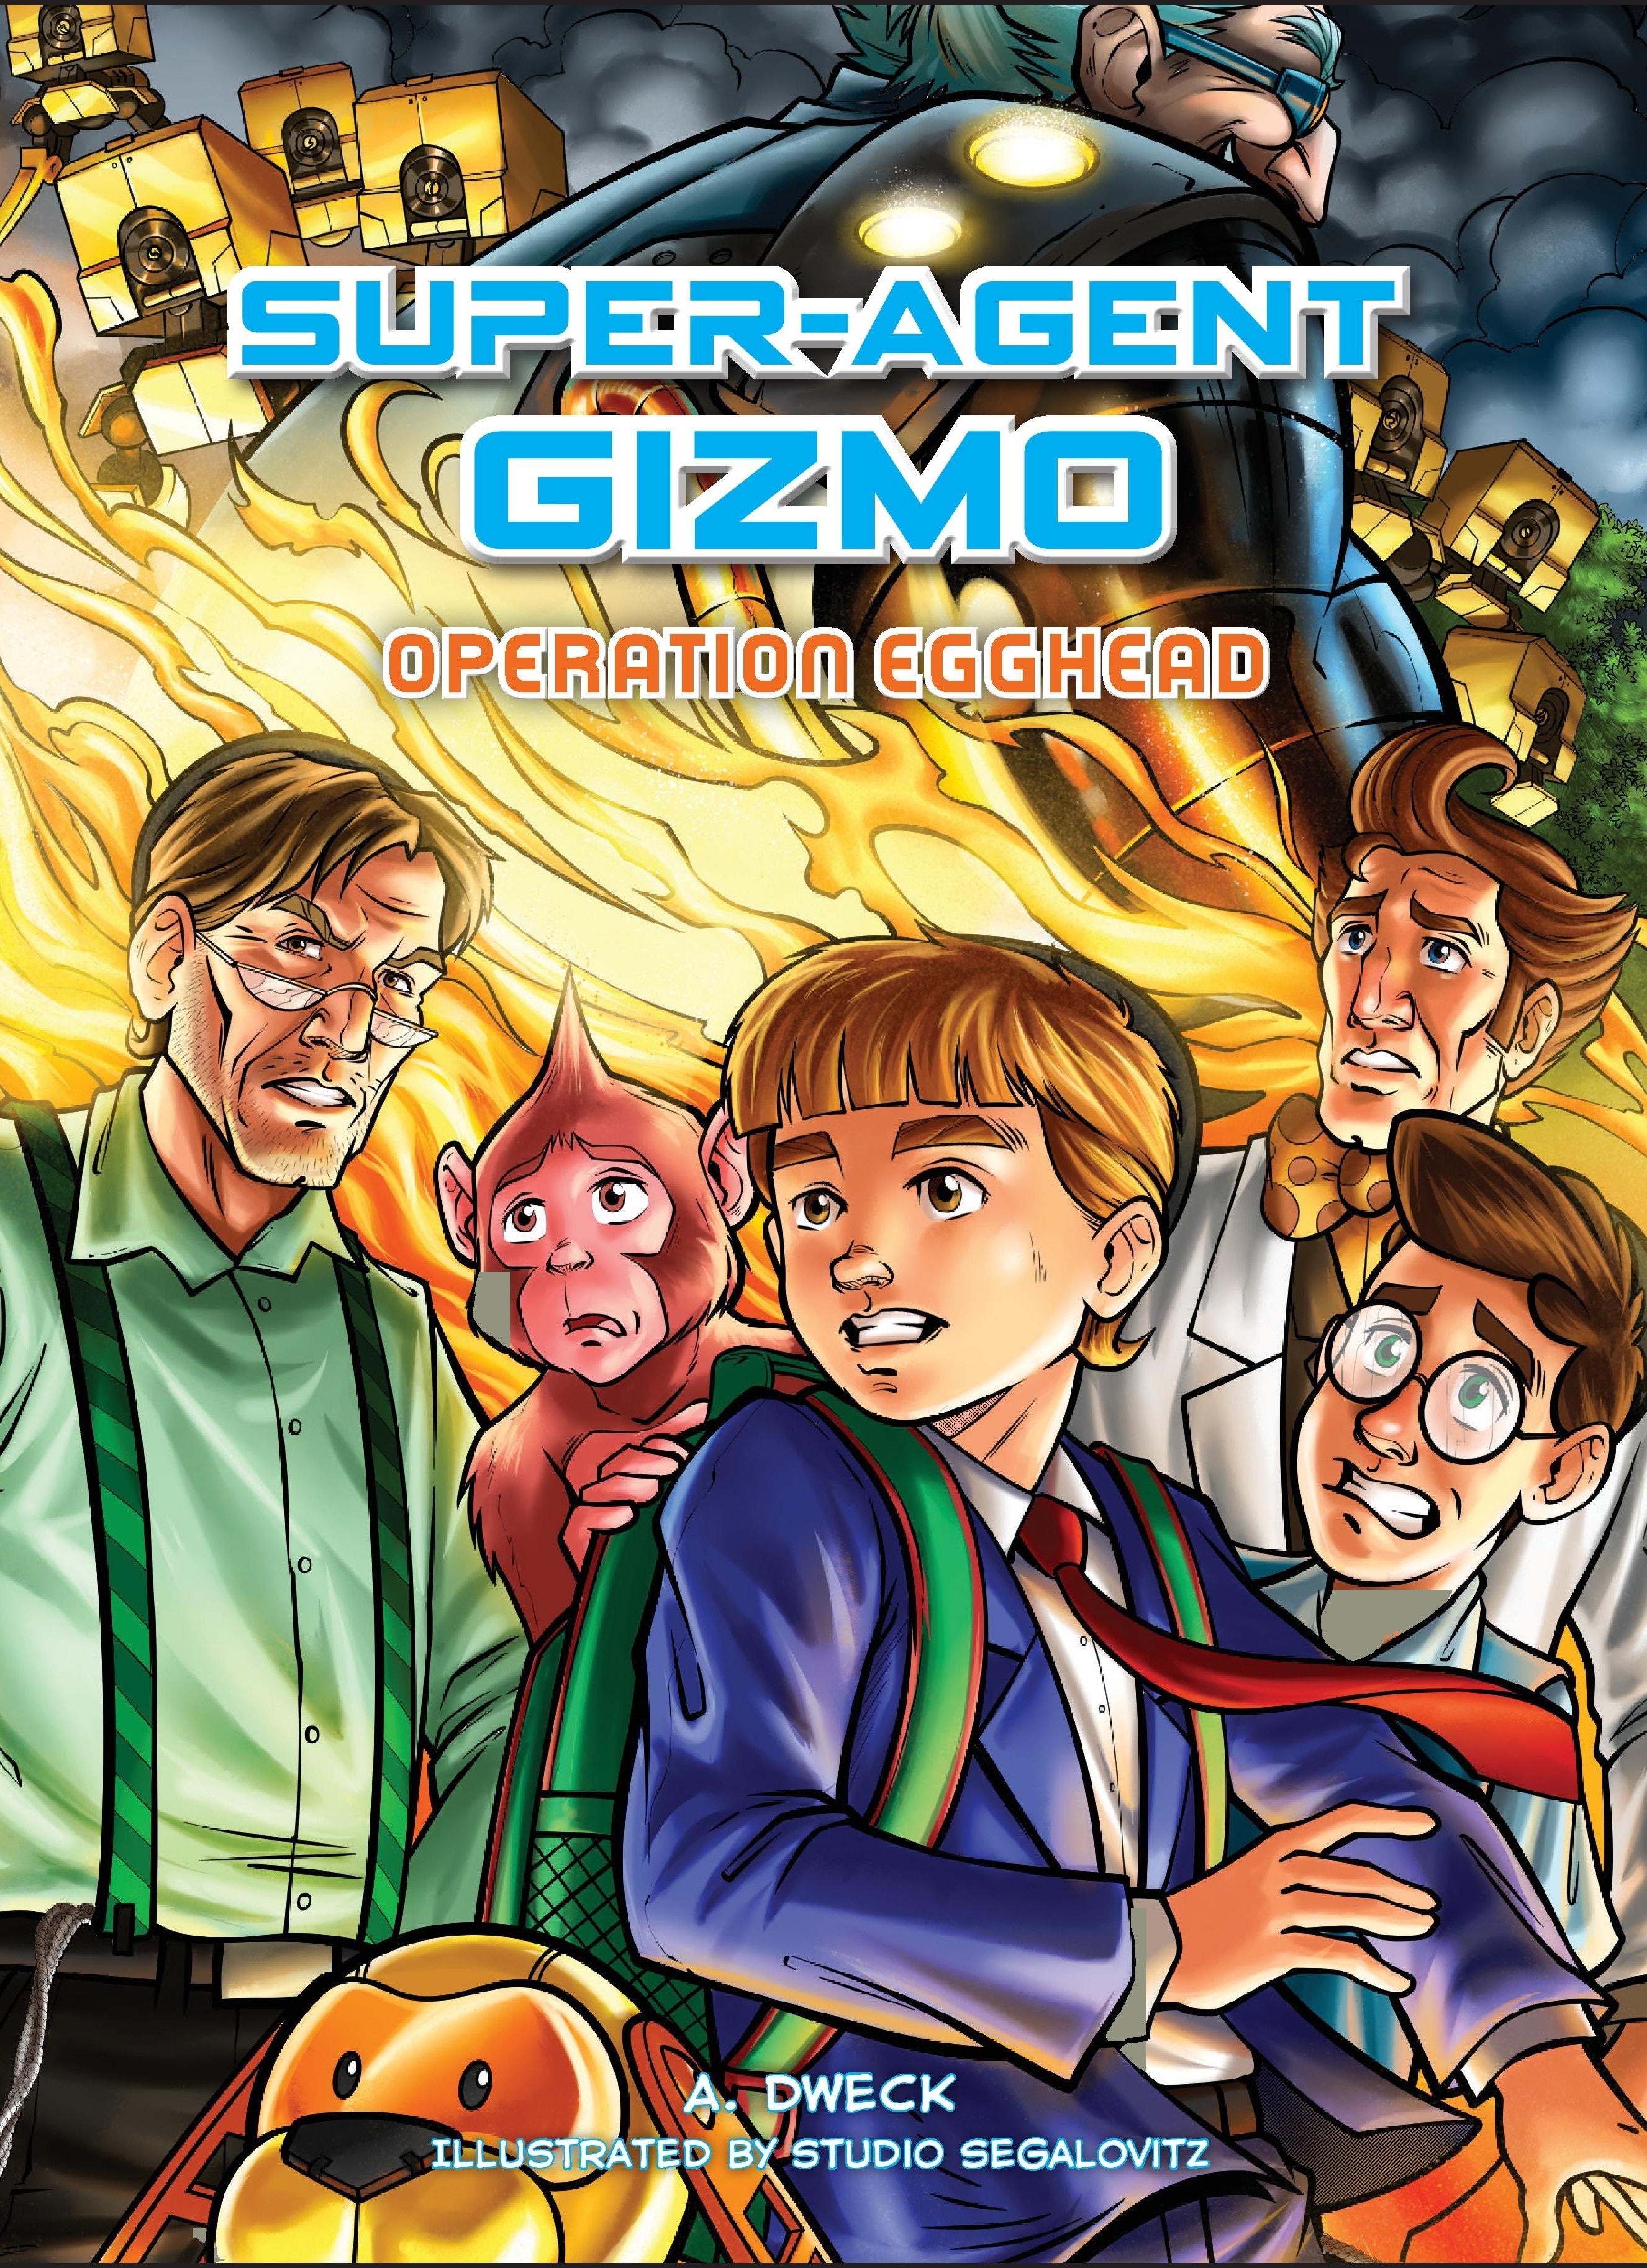 Super-Agent Gizmo Operation Egghead (Audio)